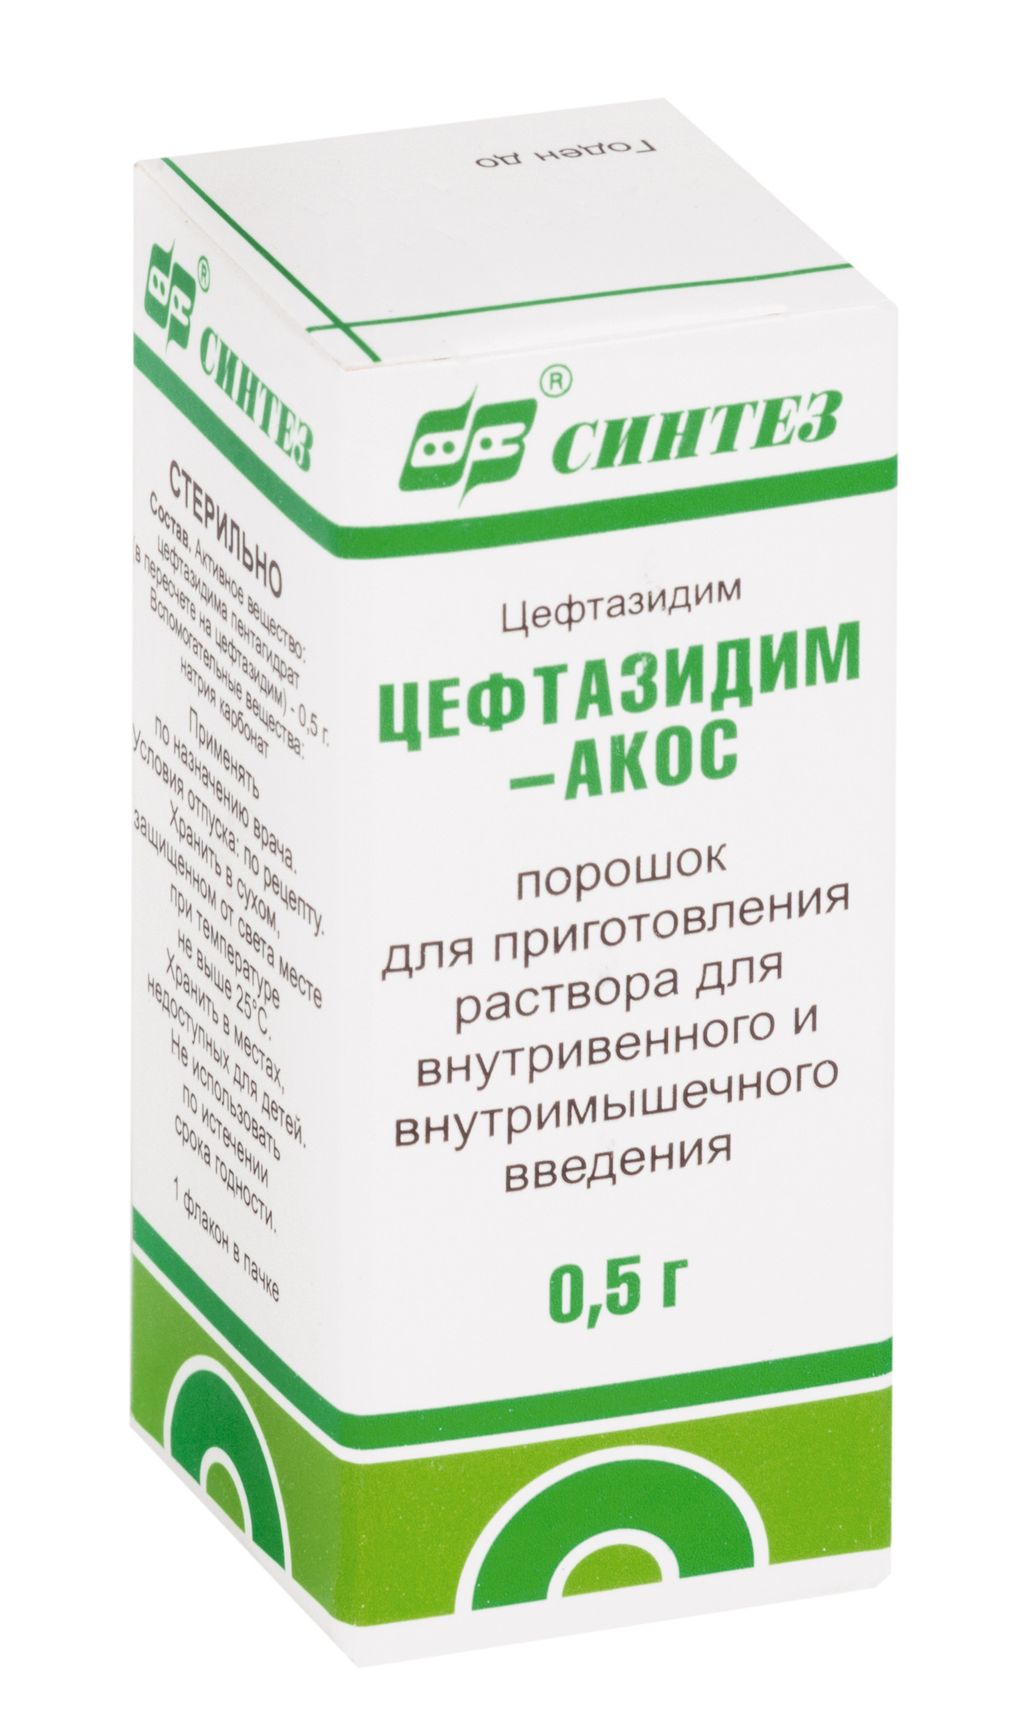 Цефтазидим-АКОС цена от 49 руб,  Цефтазидим-АКОС  .